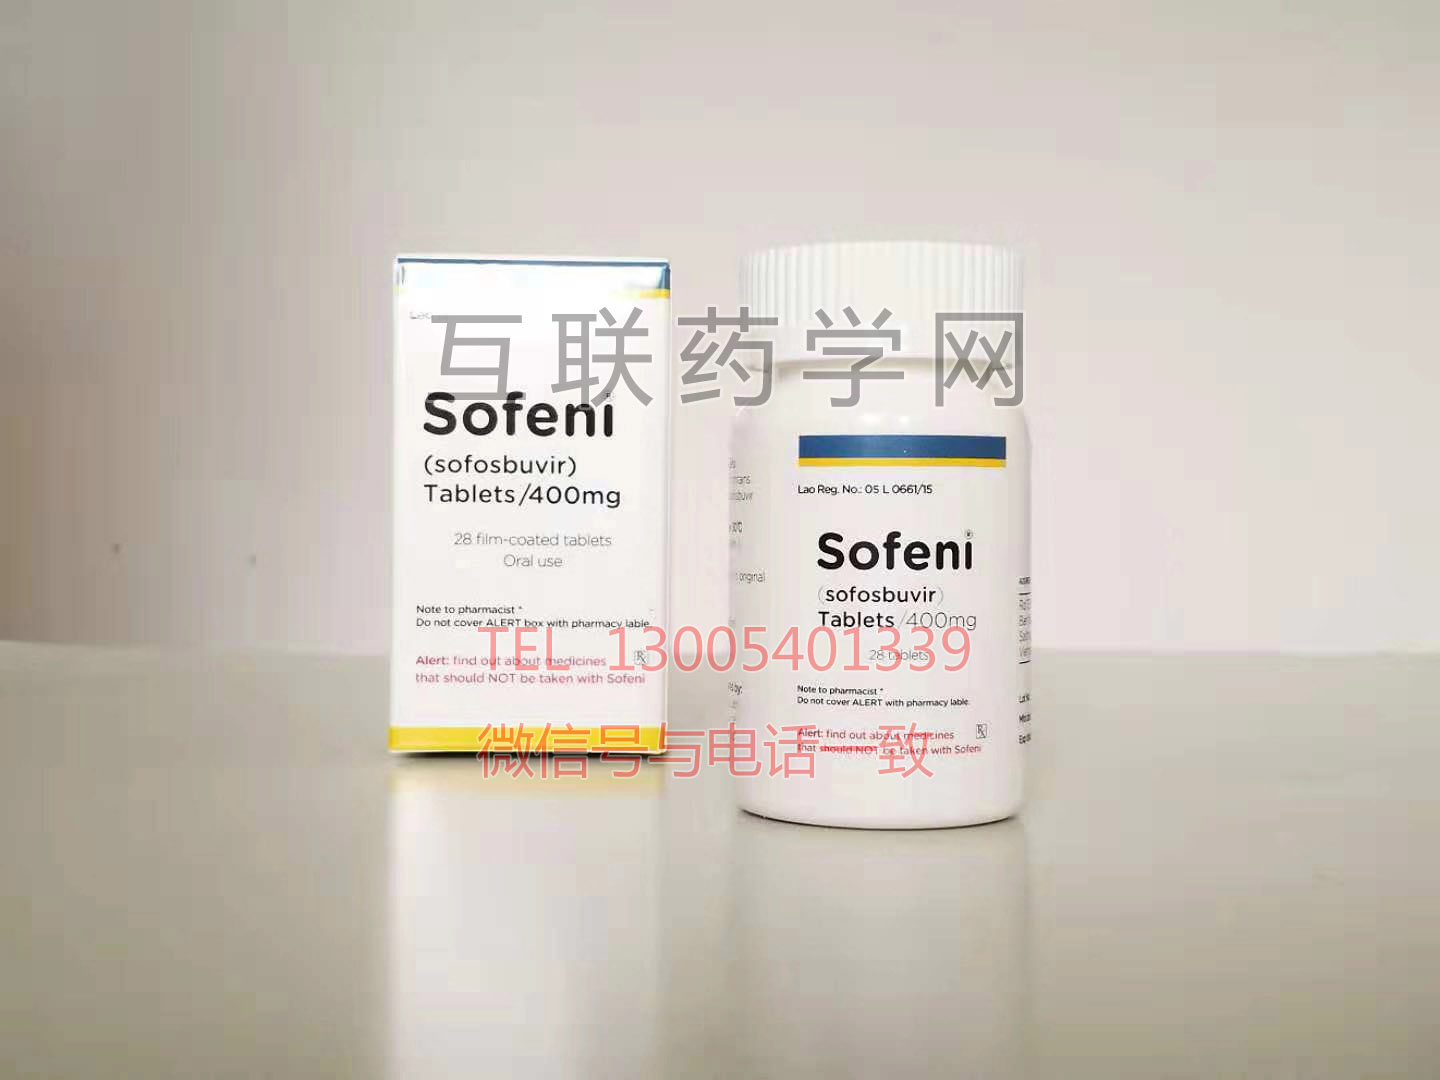  sofeni(sofosbuvir)